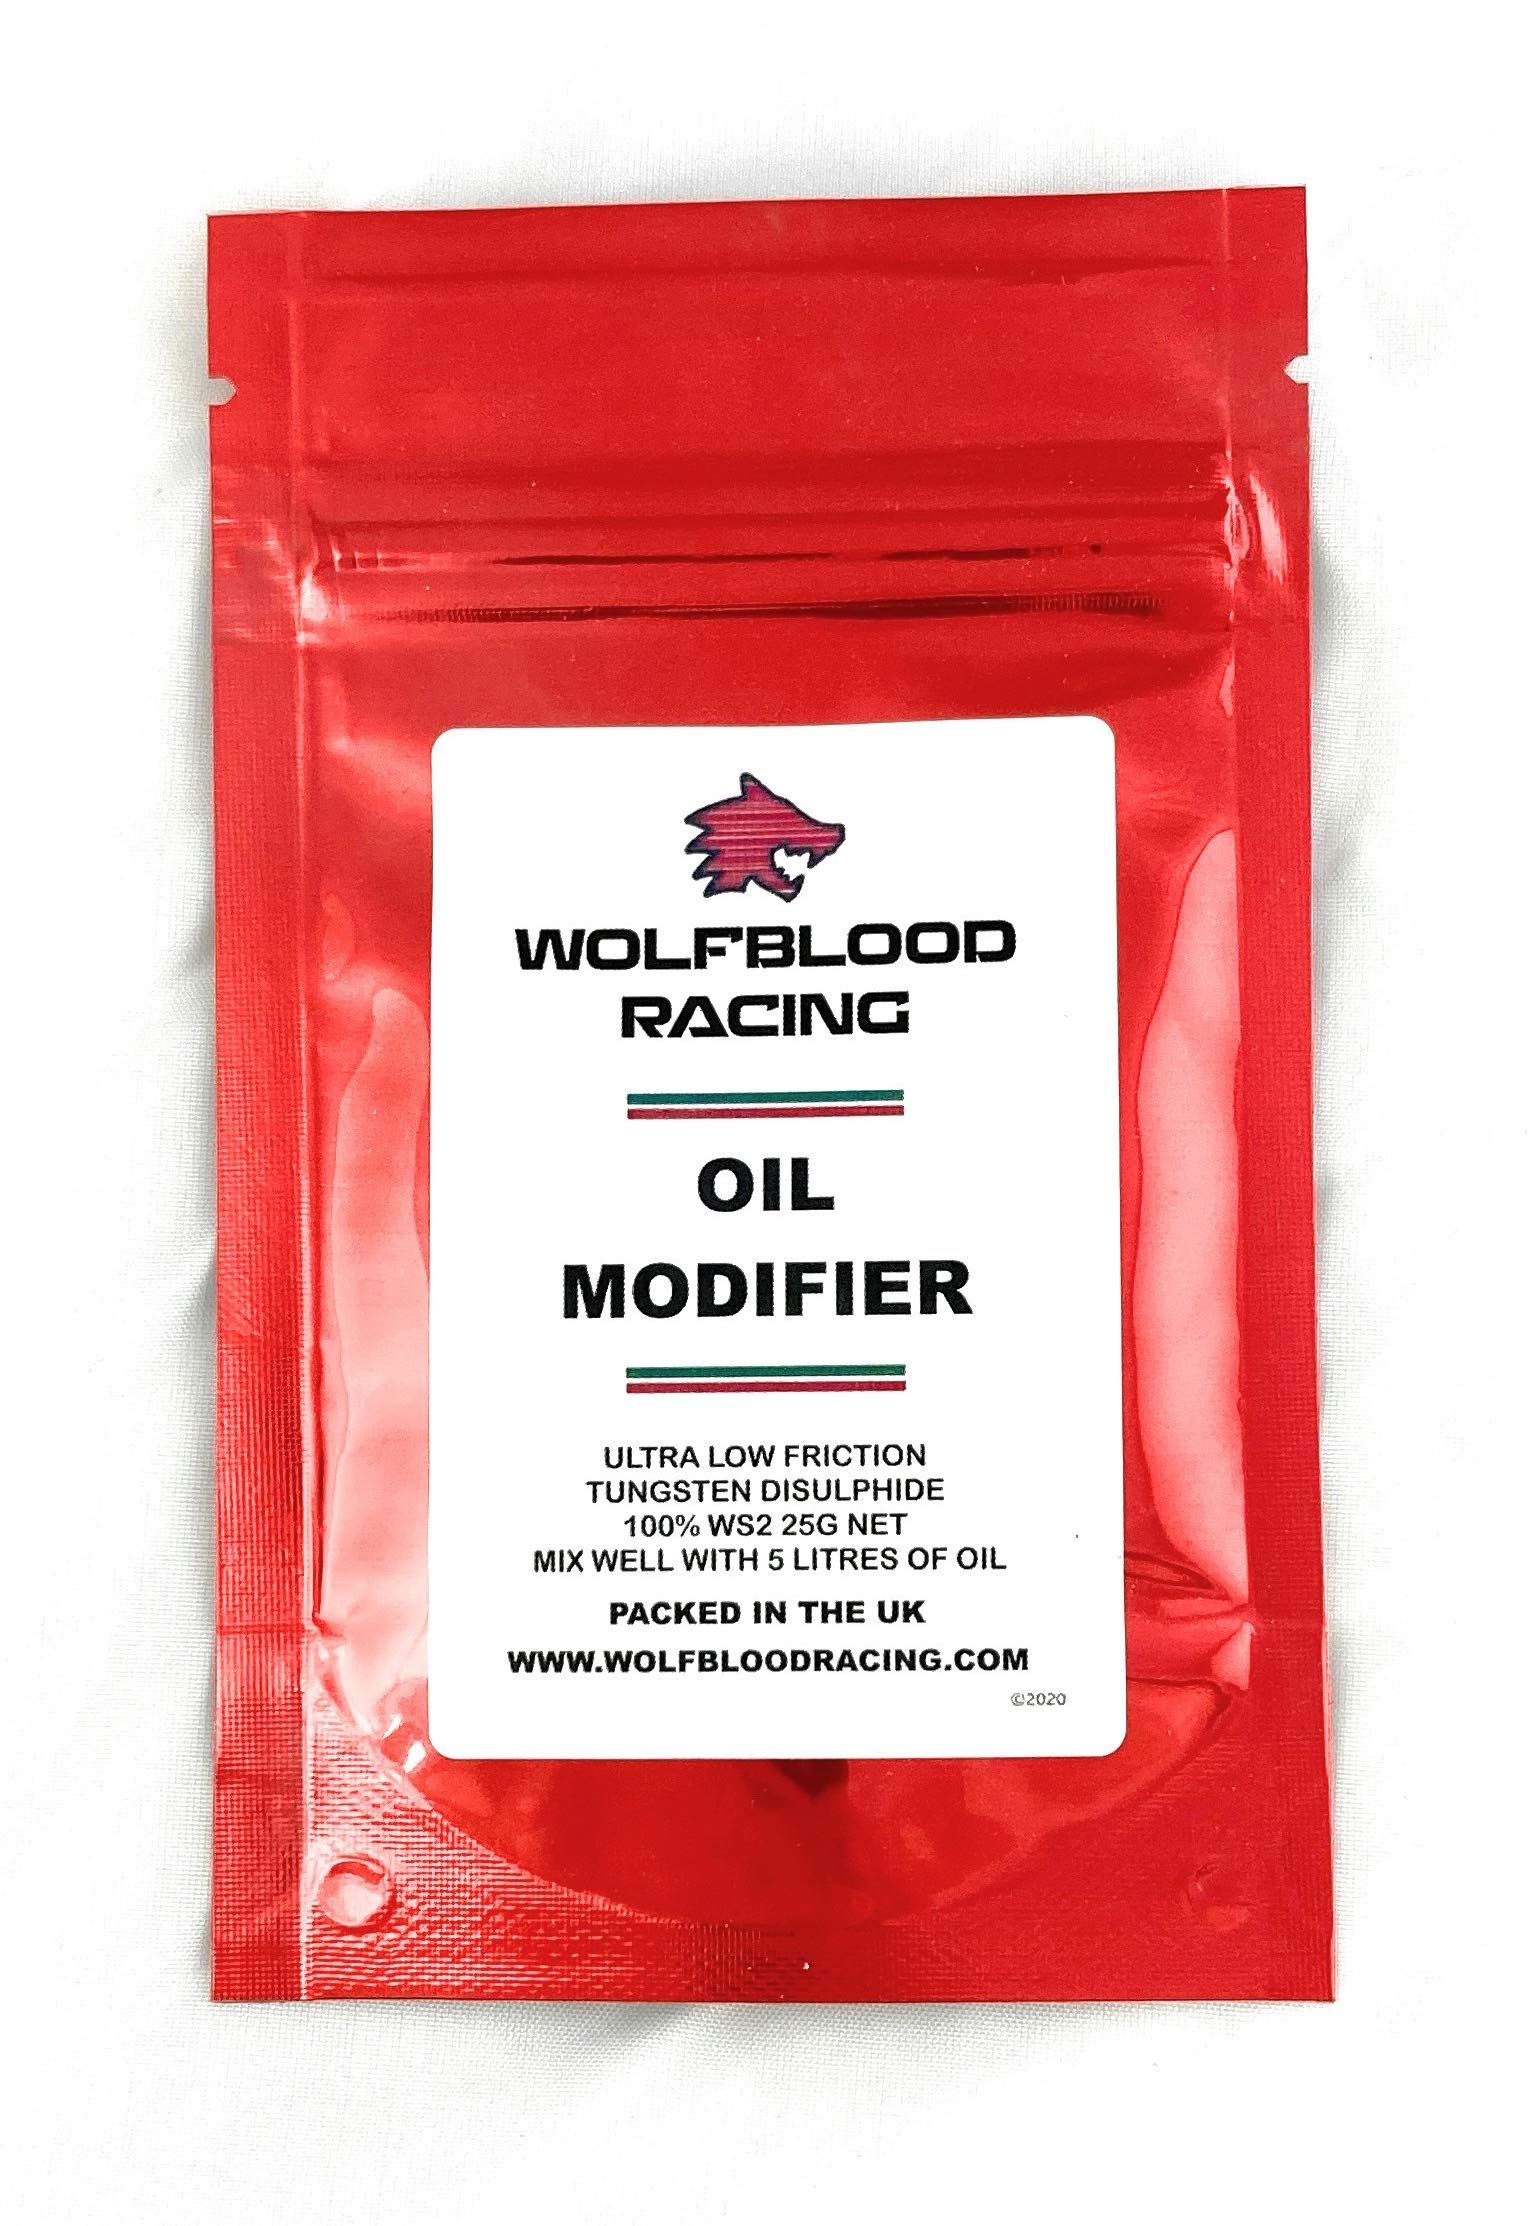 Wolfblood Racing Oil Modifier Reibungsreduzierer Pulver Additiv 25 g Packung - behandelt 5 Liter Motor- oder Getriebeöl von Wolfblood Racing